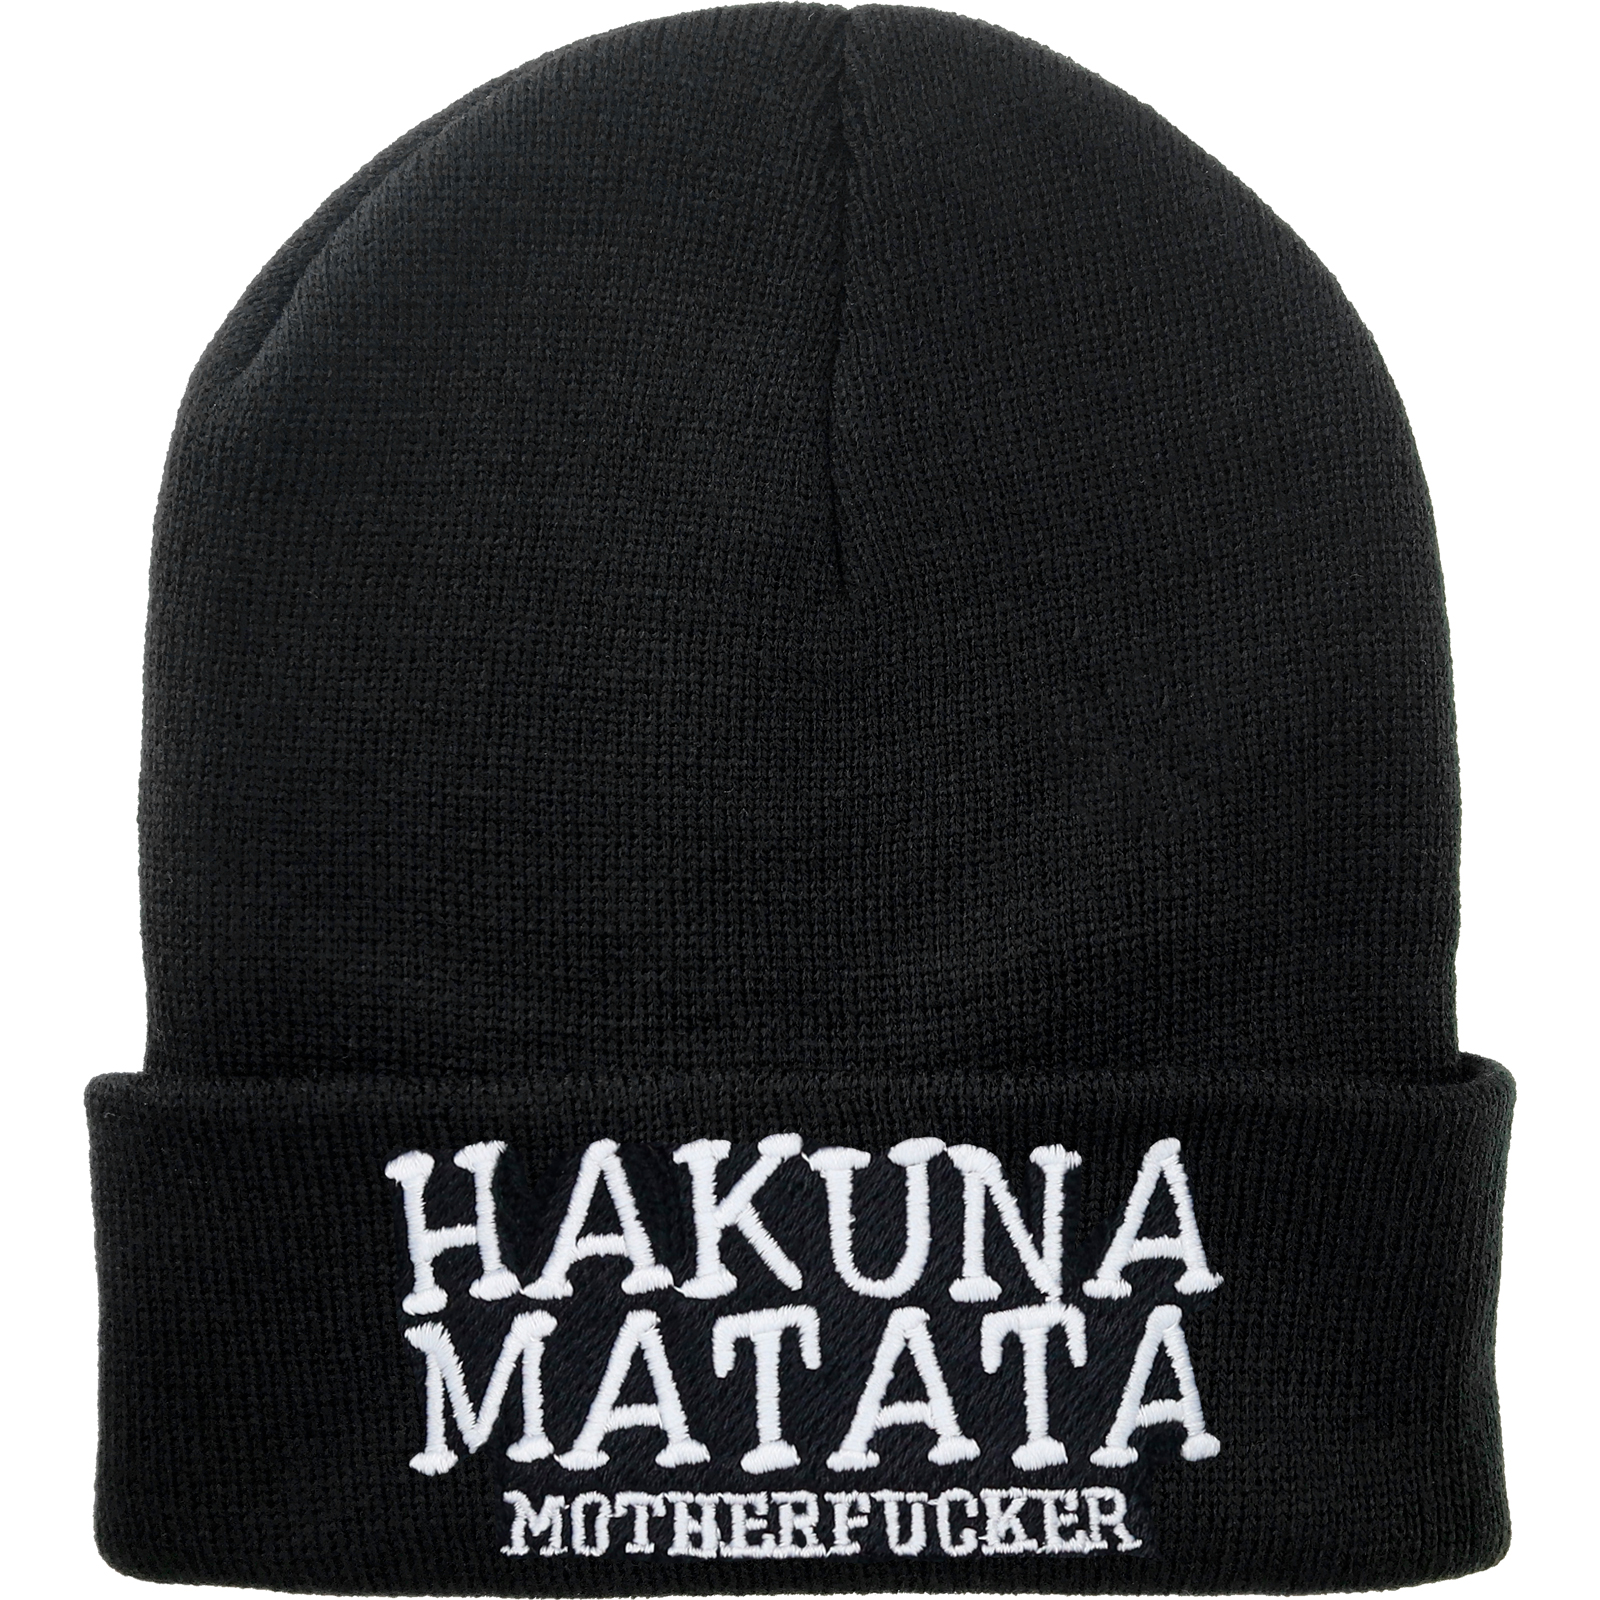 Hakuna Matata (Motherfucker) - Strickmütze